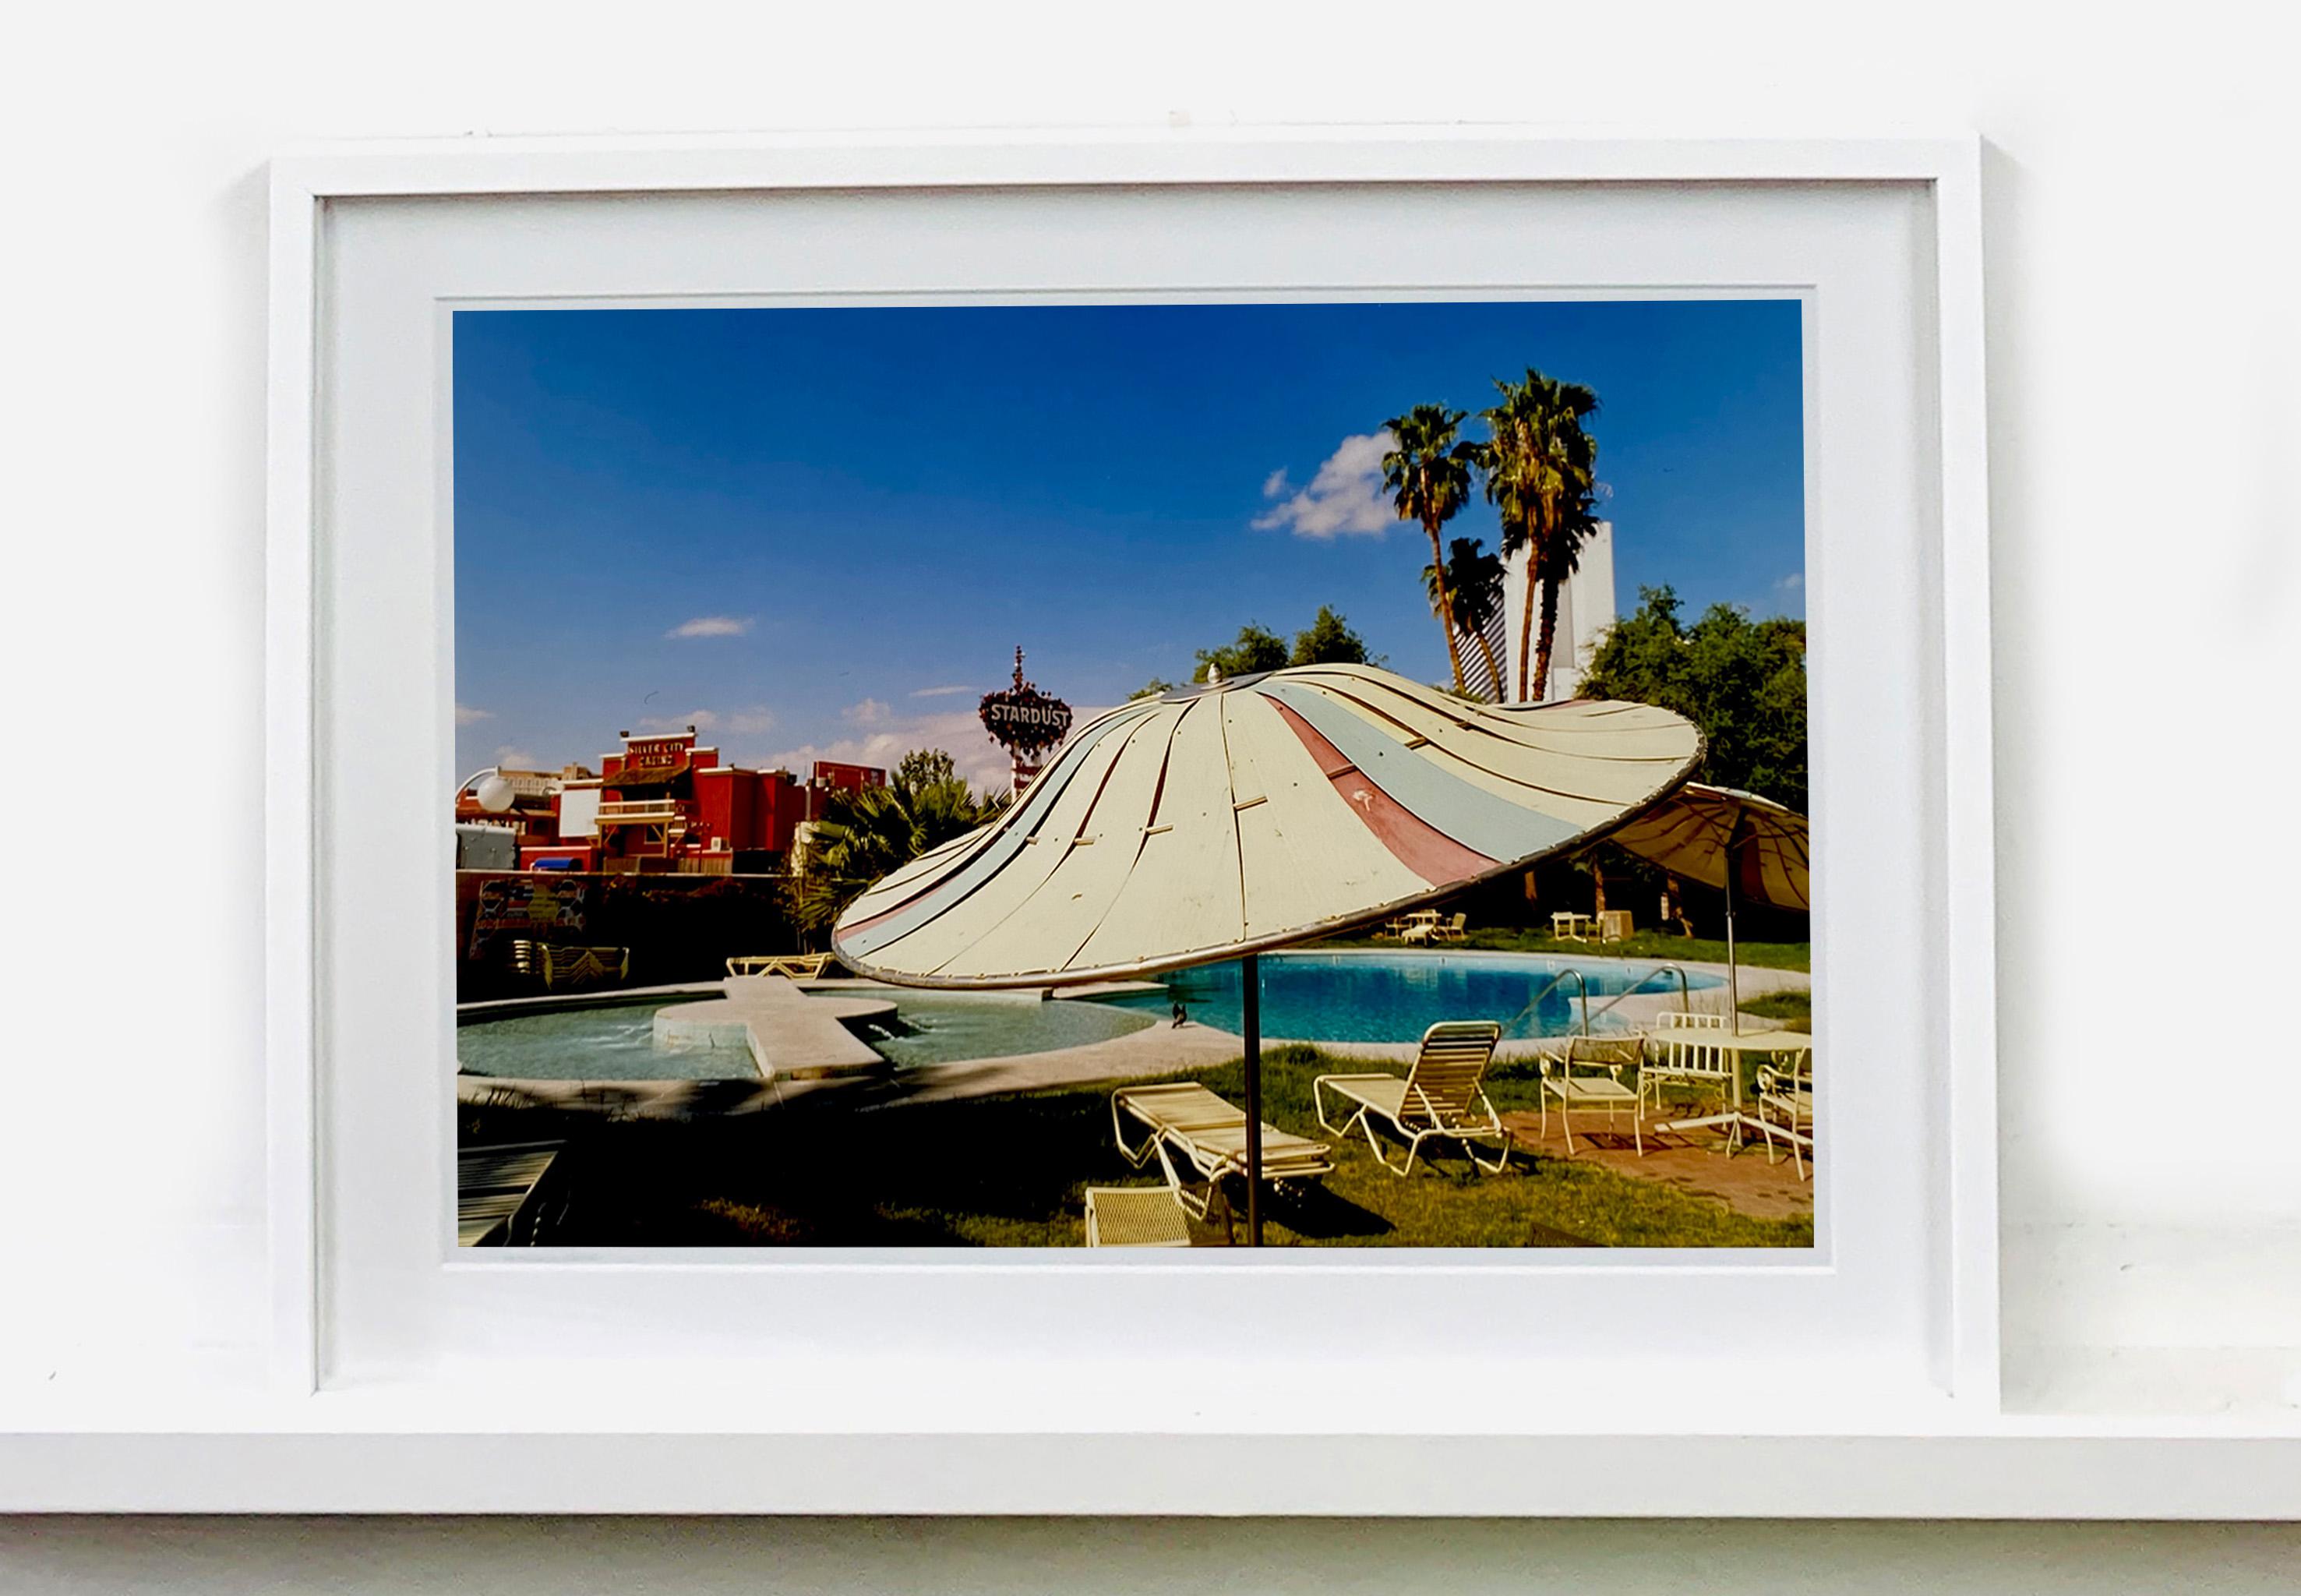 Poolside Parasol, El Morocco Motel, Las Vegas - American Color Photography - Pop Art Print by Richard Heeps